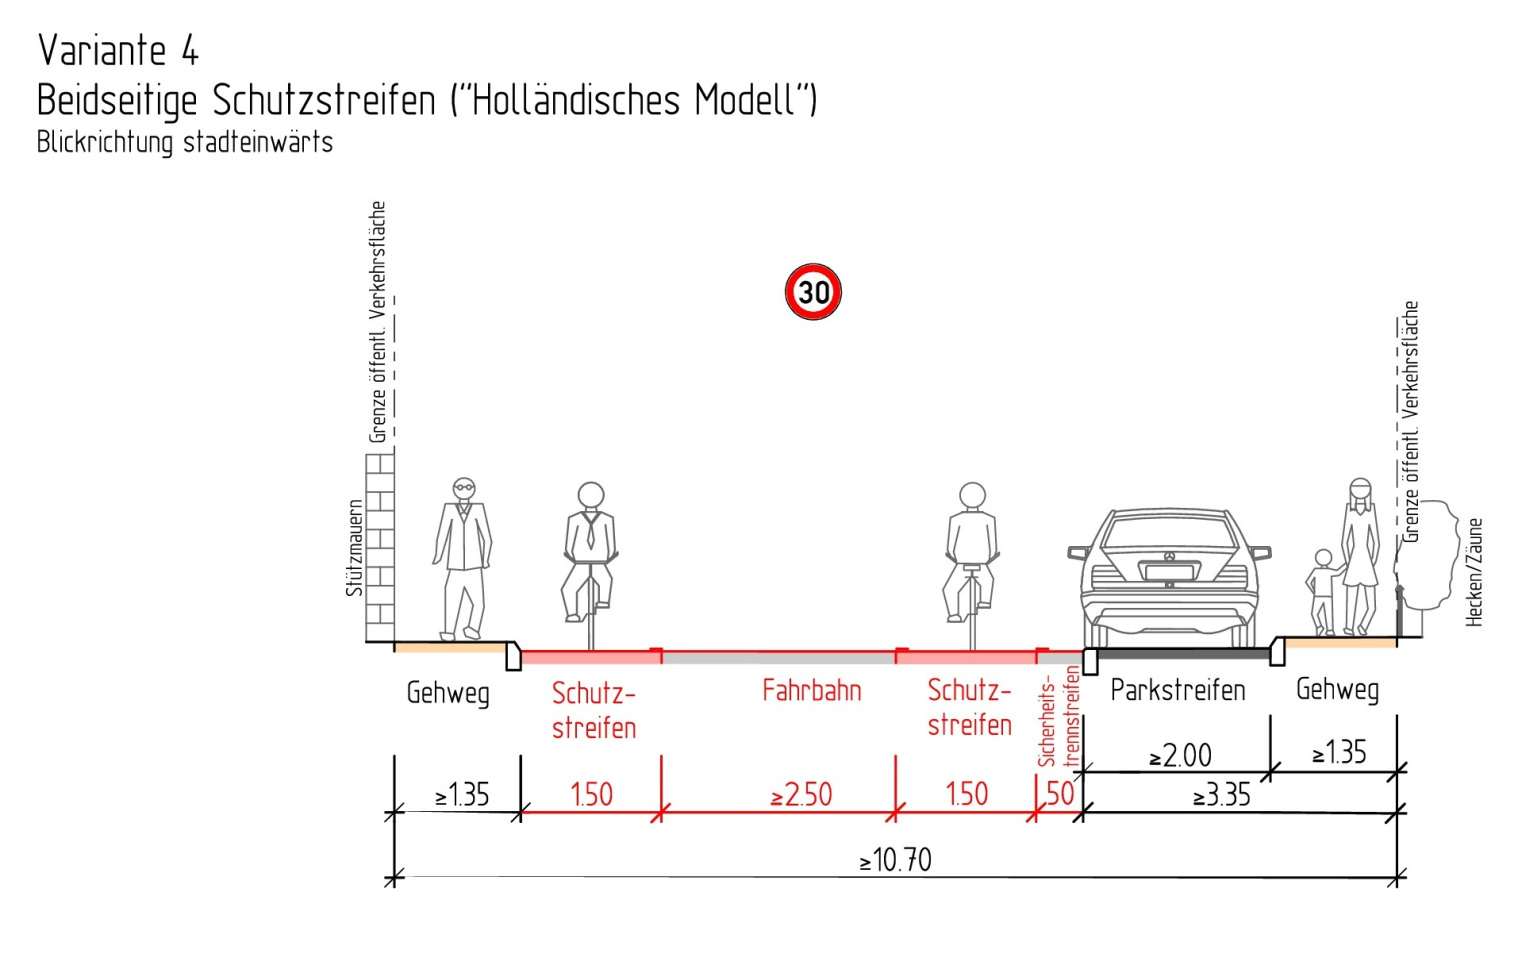 Schutzstreifen werden für Radfahrer in Bielefeld zur